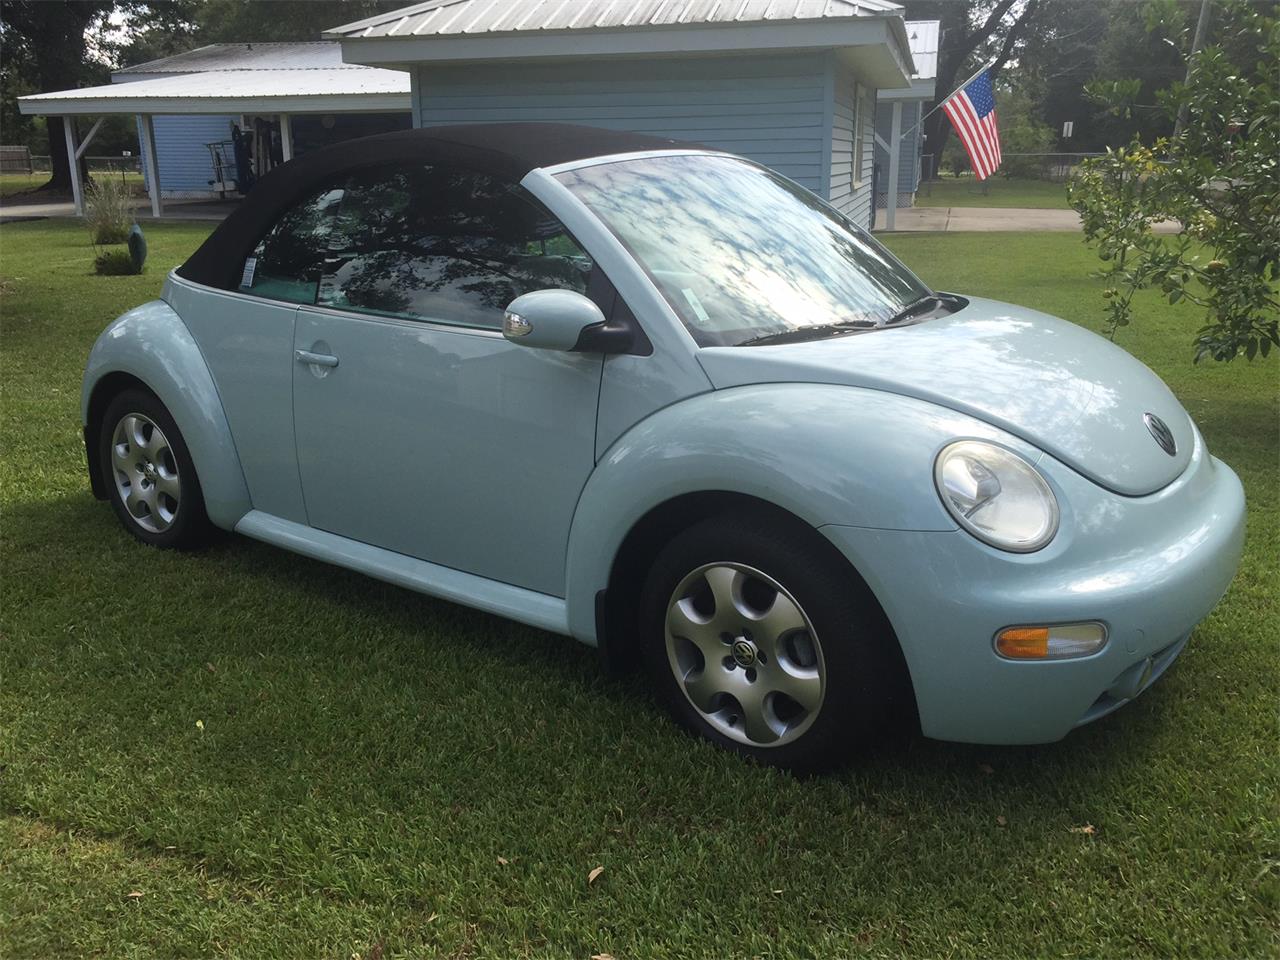 2004 Volkswagen Beetle for Sale | ClassicCars.com | CC-1024474 2004 Volkswagen Beetle Trunk Will Not Open